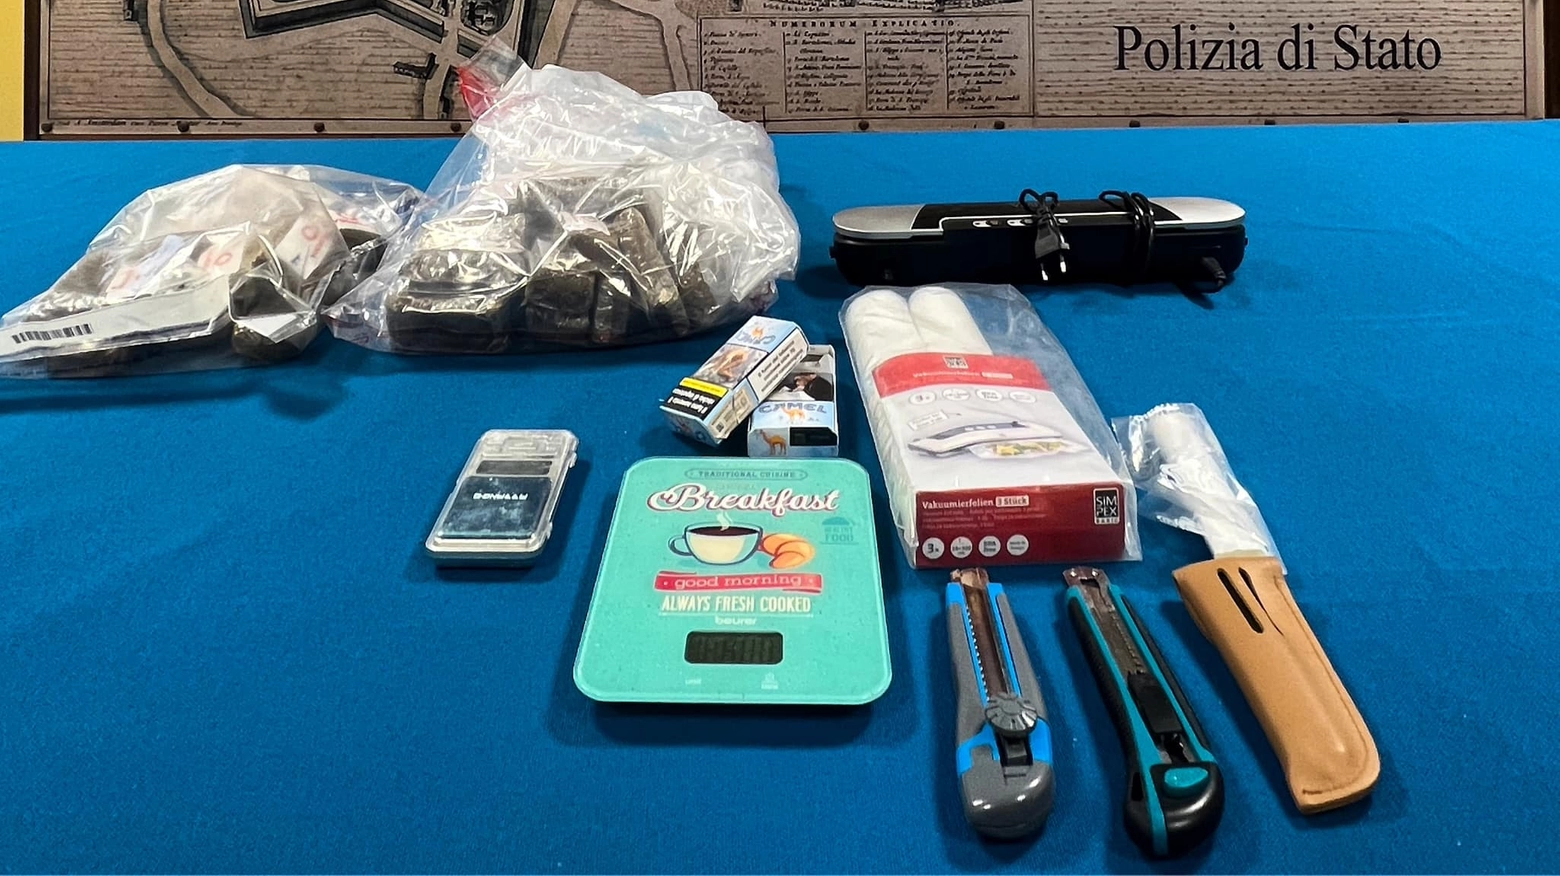 Arrestati in flagrante due complici: un italiano e un albanese. La polizia ha sequestrato panetti di hashish pronti da tagliare e mezzo chilo di cocaina suddivisa in dosi